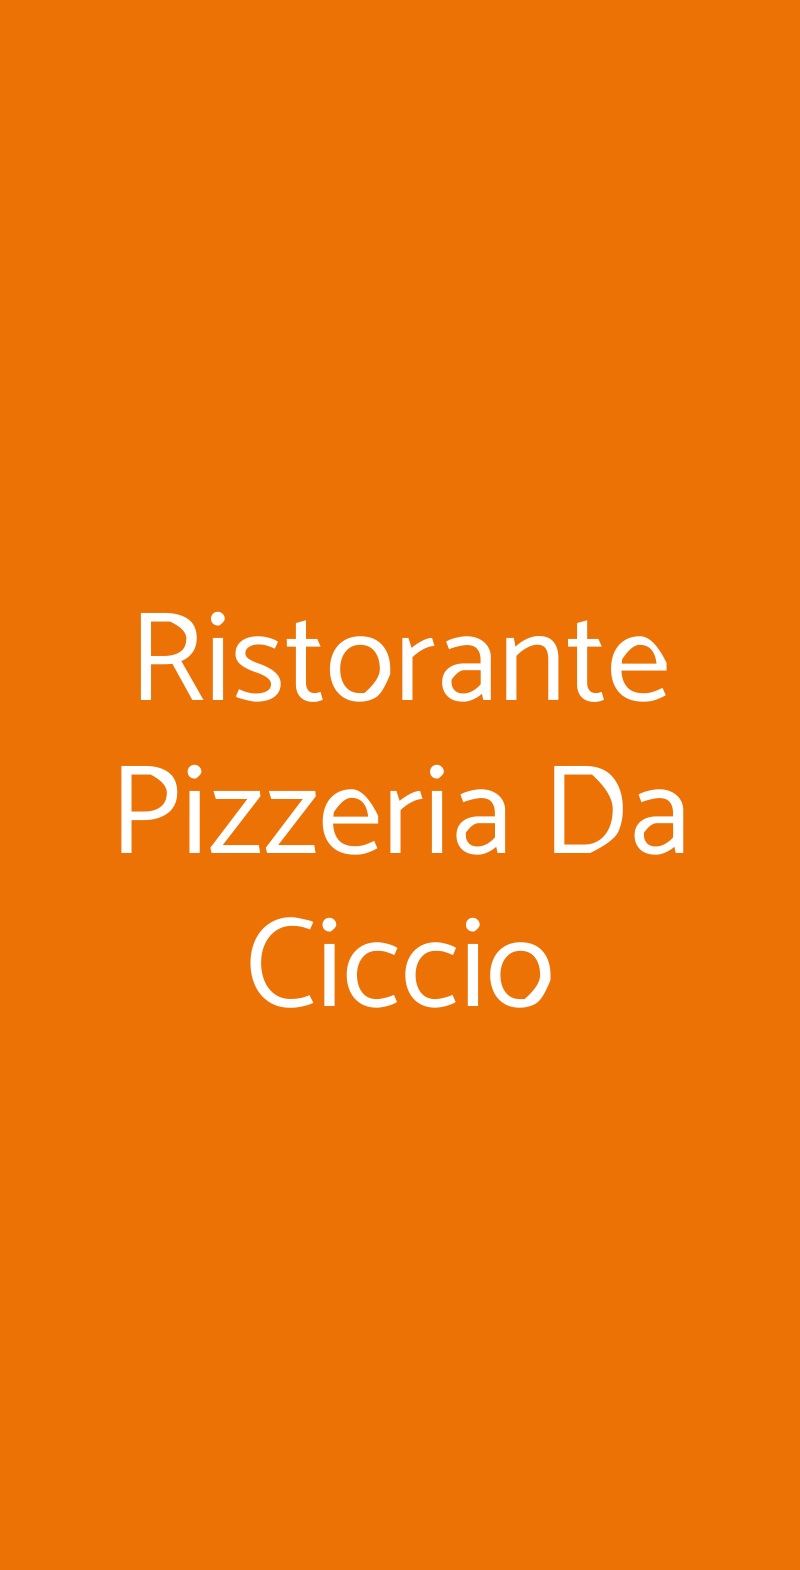 Ristorante Pizzeria Da Ciccio Agropoli menù 1 pagina